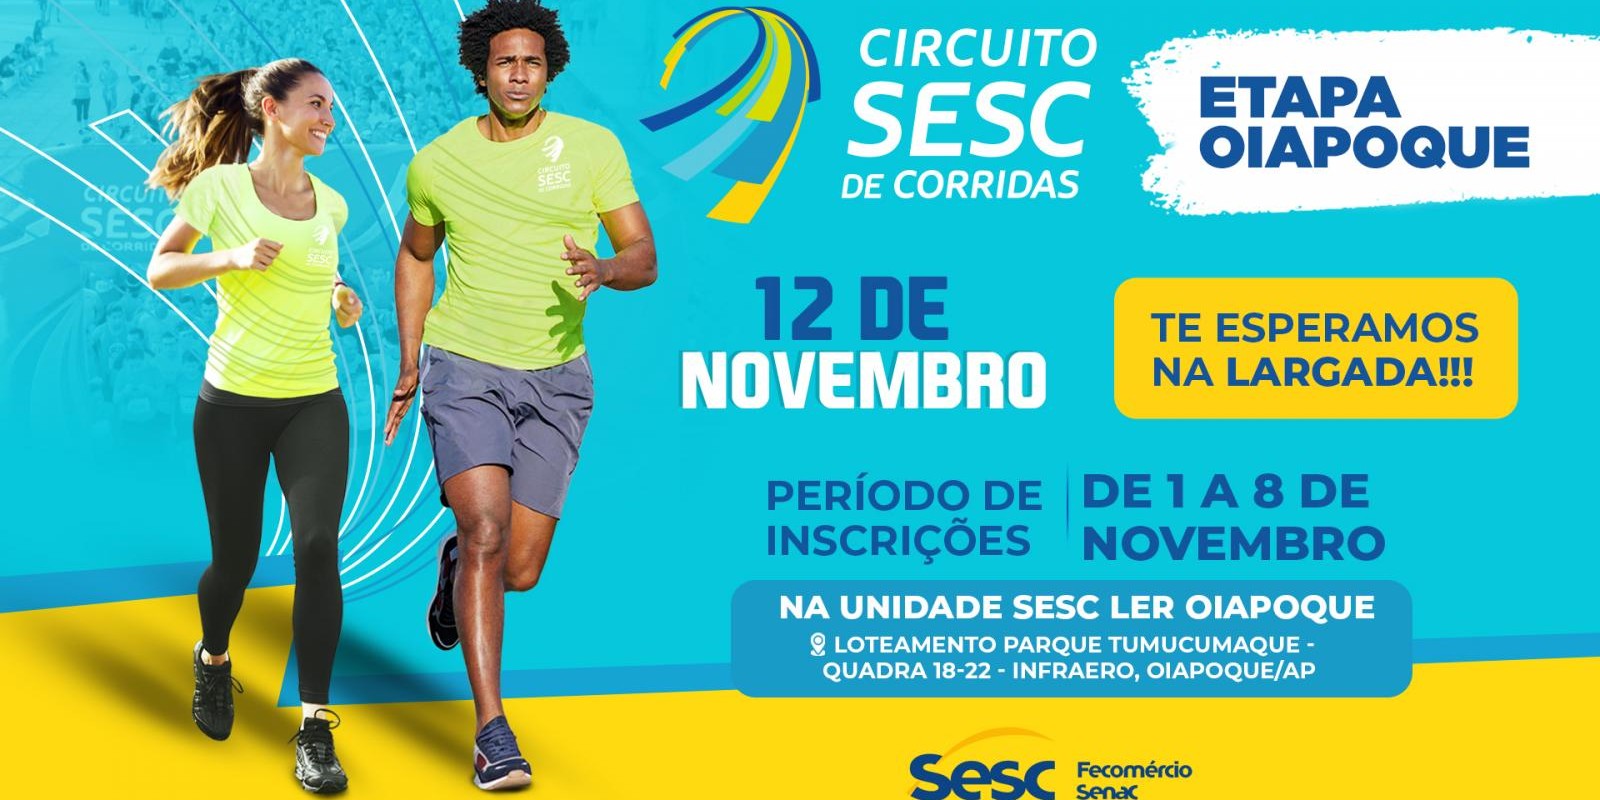 Sesc e Sogipa realizam corrida no dia 11/09, em Porto Alegre - SESC-RS